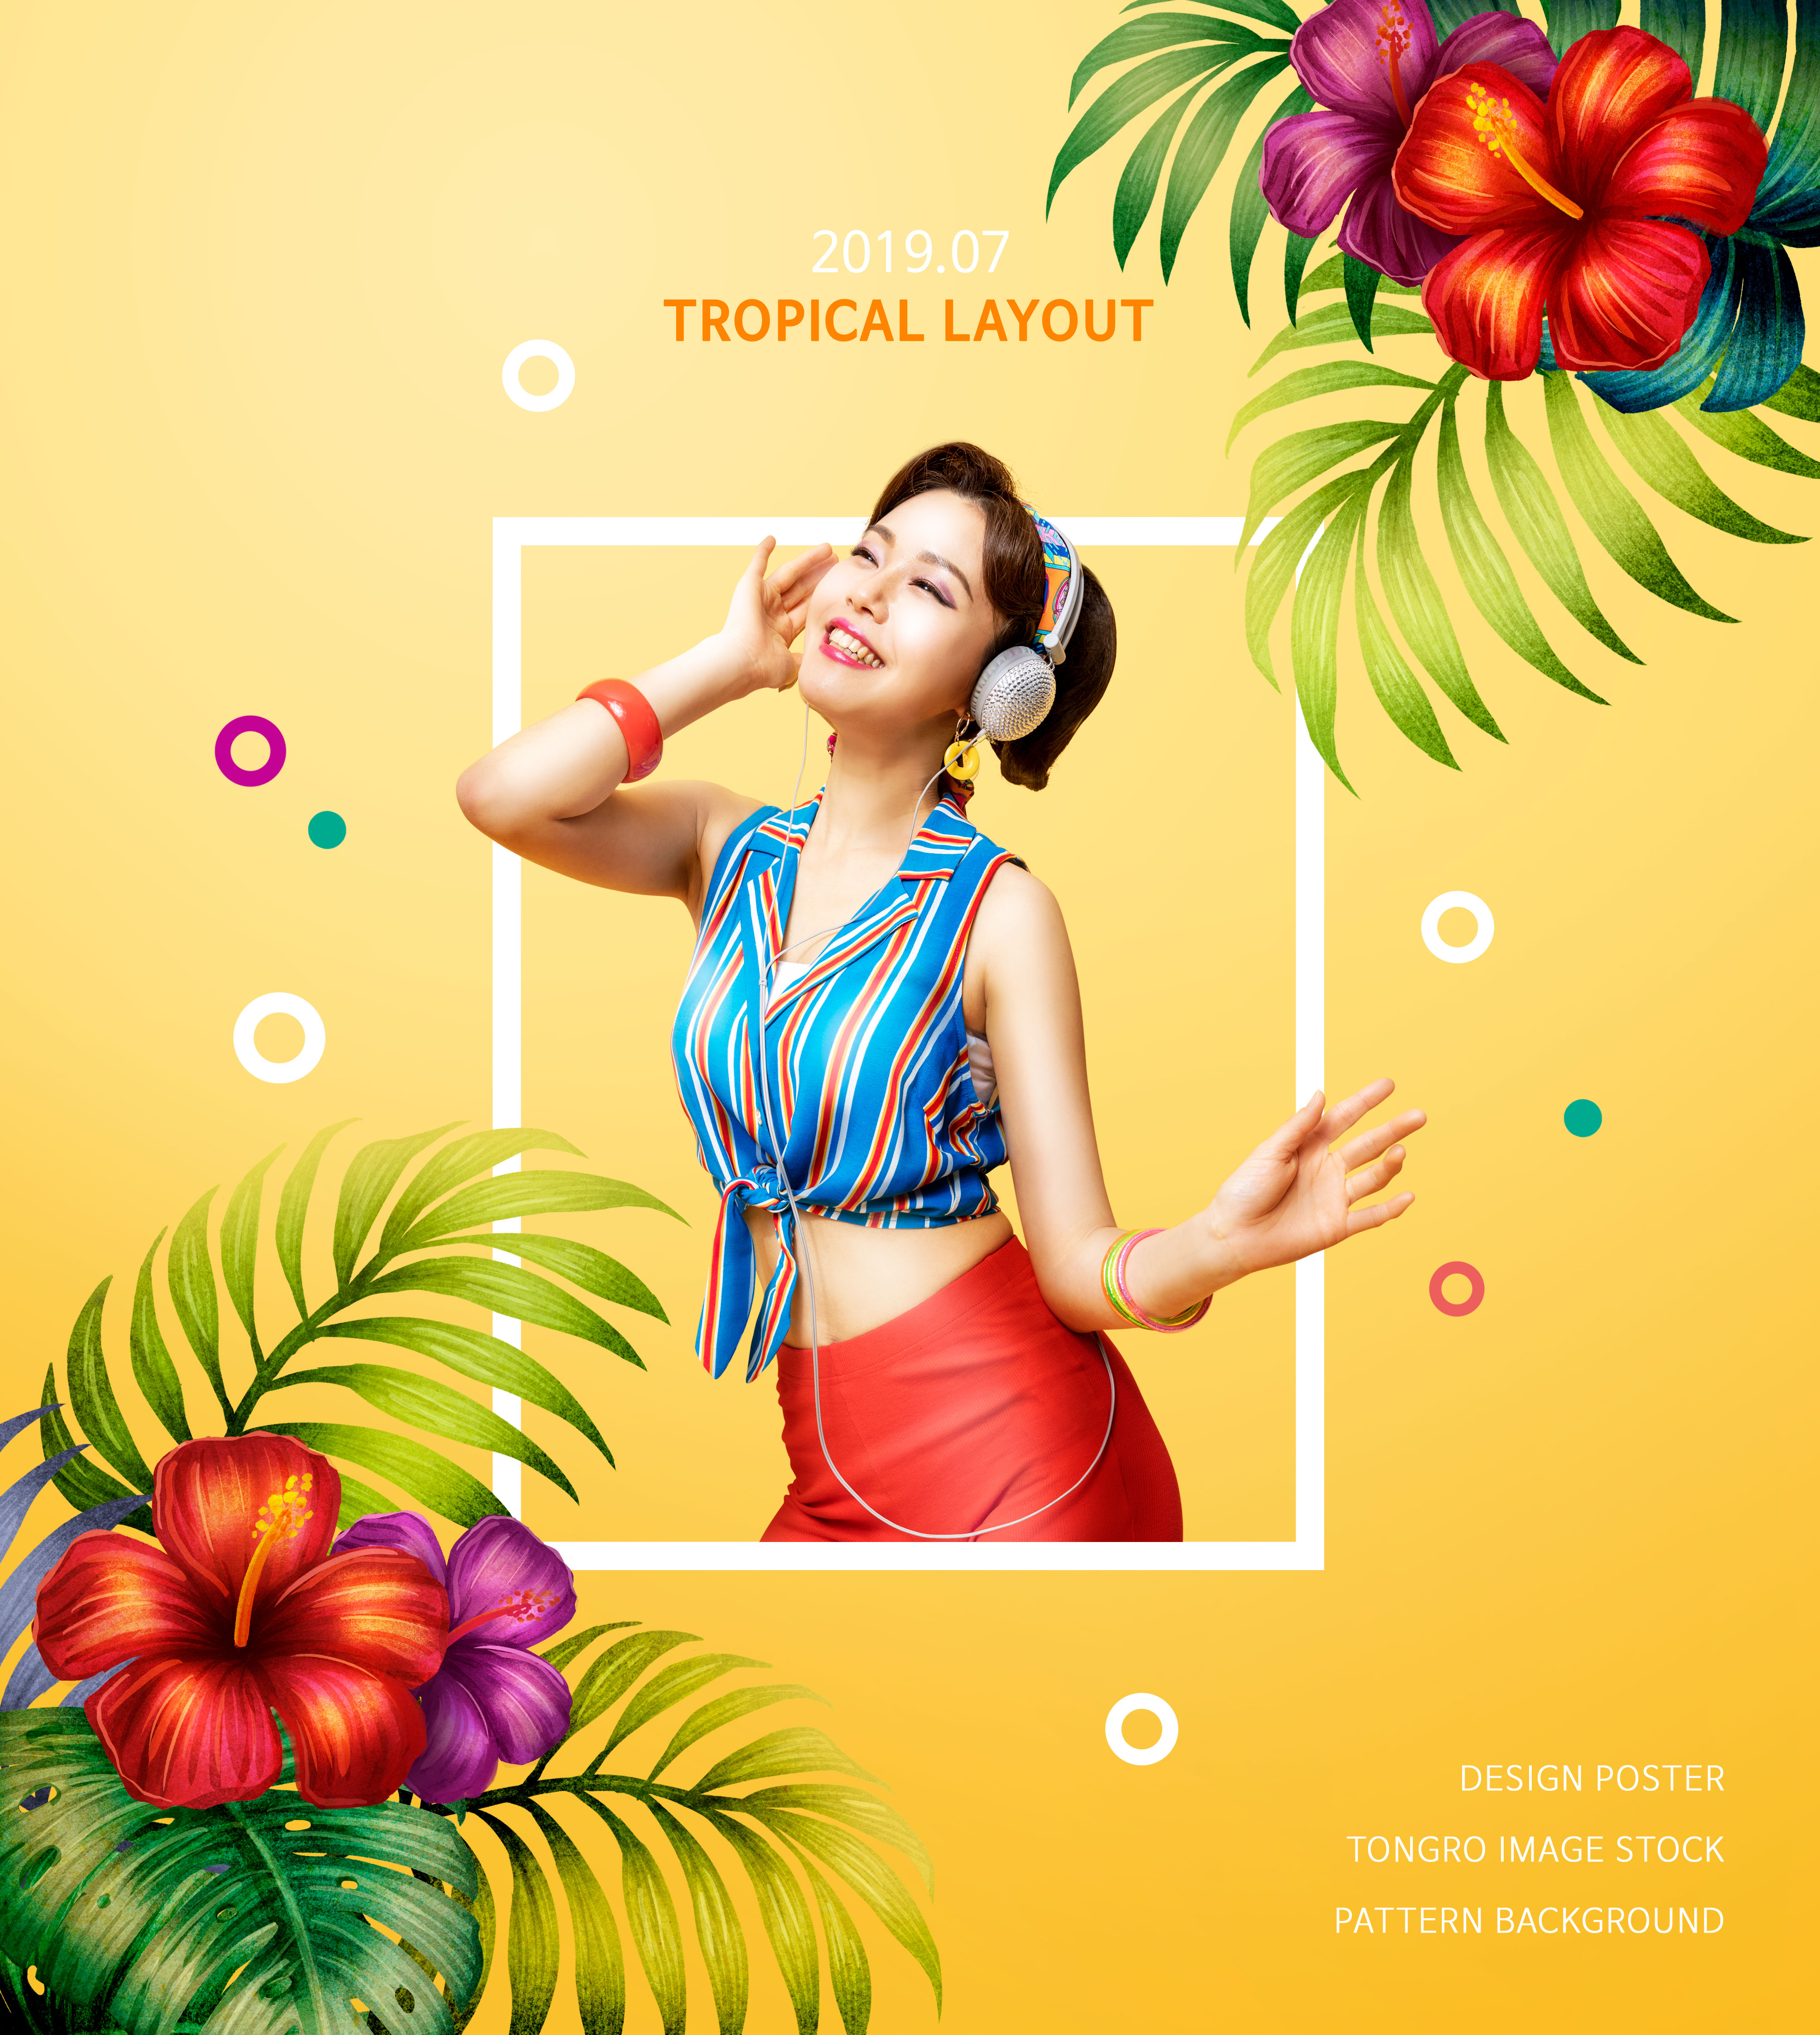 热带花卉植物装饰夏季主题海报设计模板插图